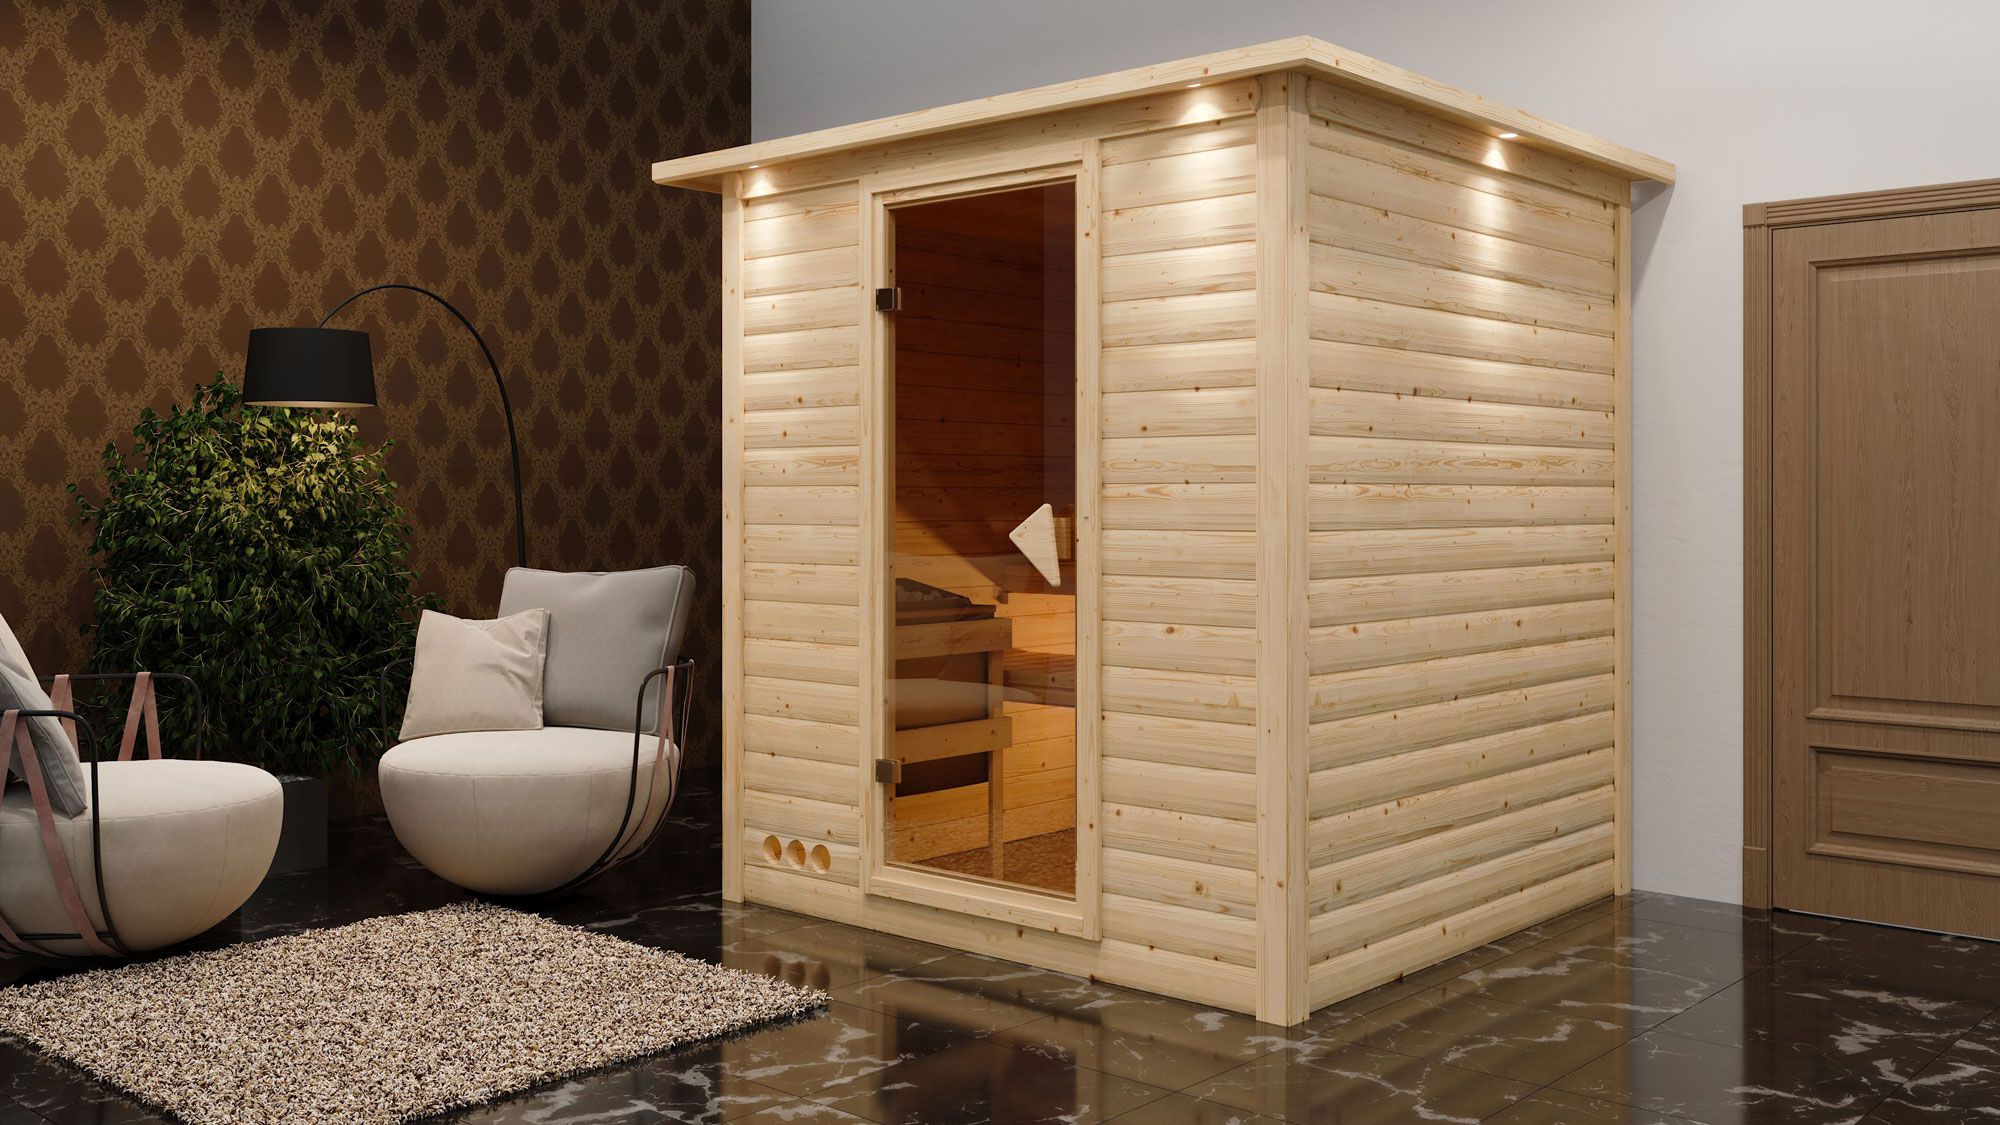 Sauna "Jonna" SET mit bronzierter Tür und Kranz  mit Ofen externe Steuerung easy 9 kW Edelstahl - 224 x 210 x 206 cm (B x T x H)